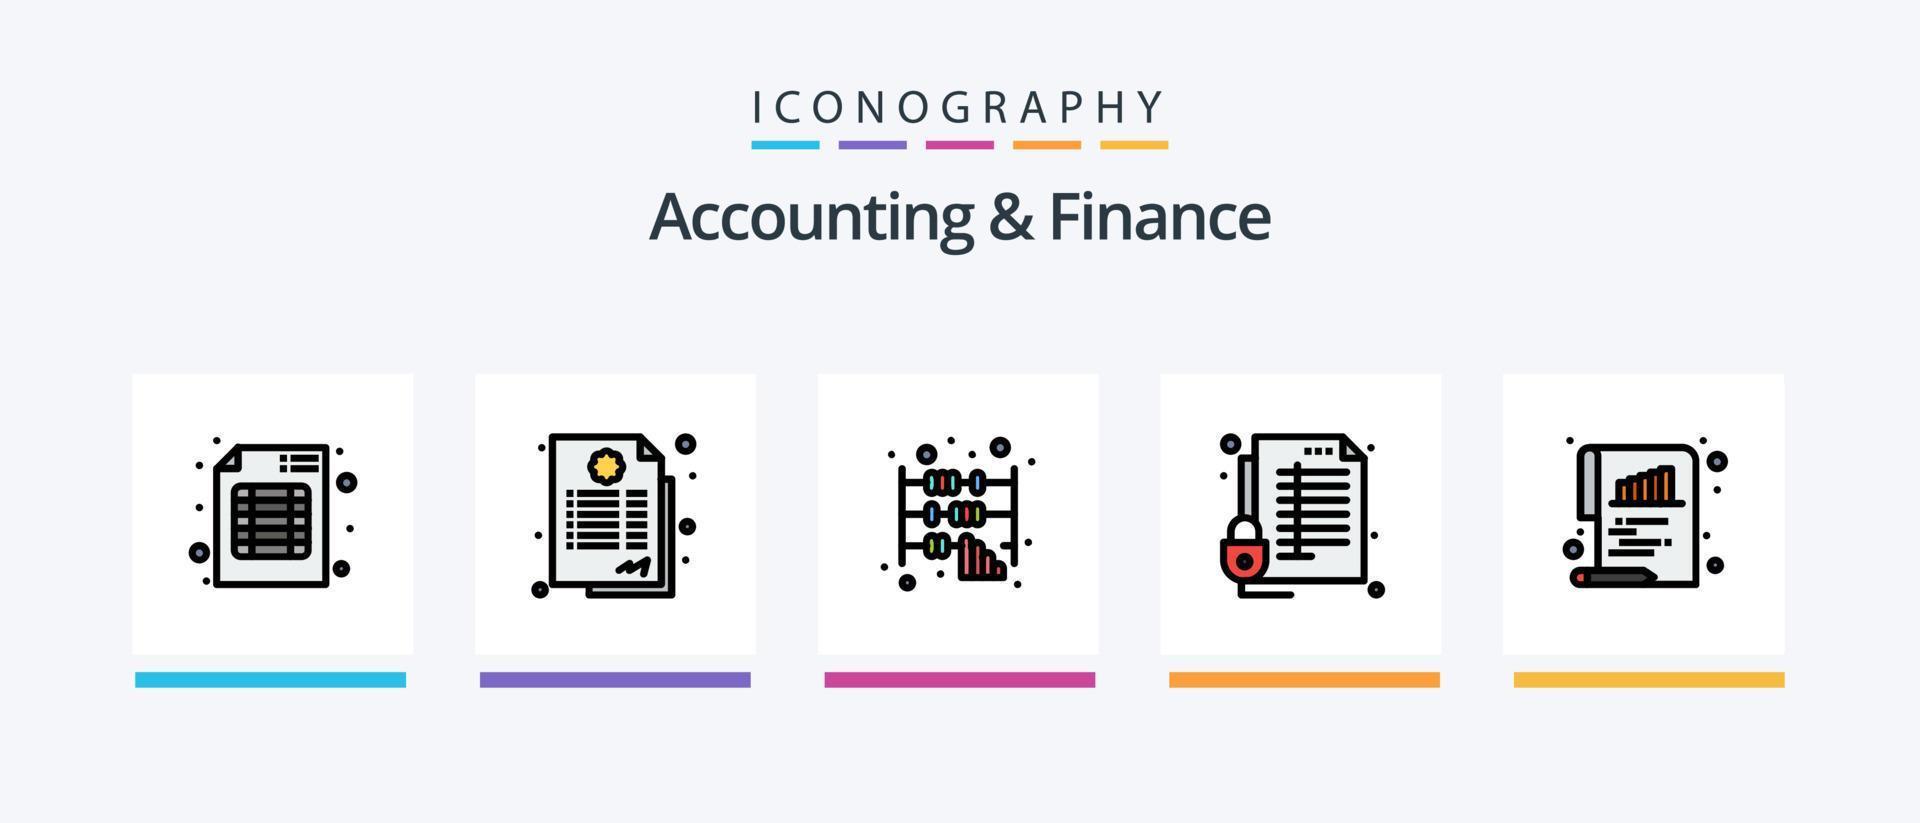 la línea de contabilidad y finanzas llenó el paquete de 5 iconos, incluida la encuesta. barras. documento. crecer. bancario. diseño de iconos creativos vector